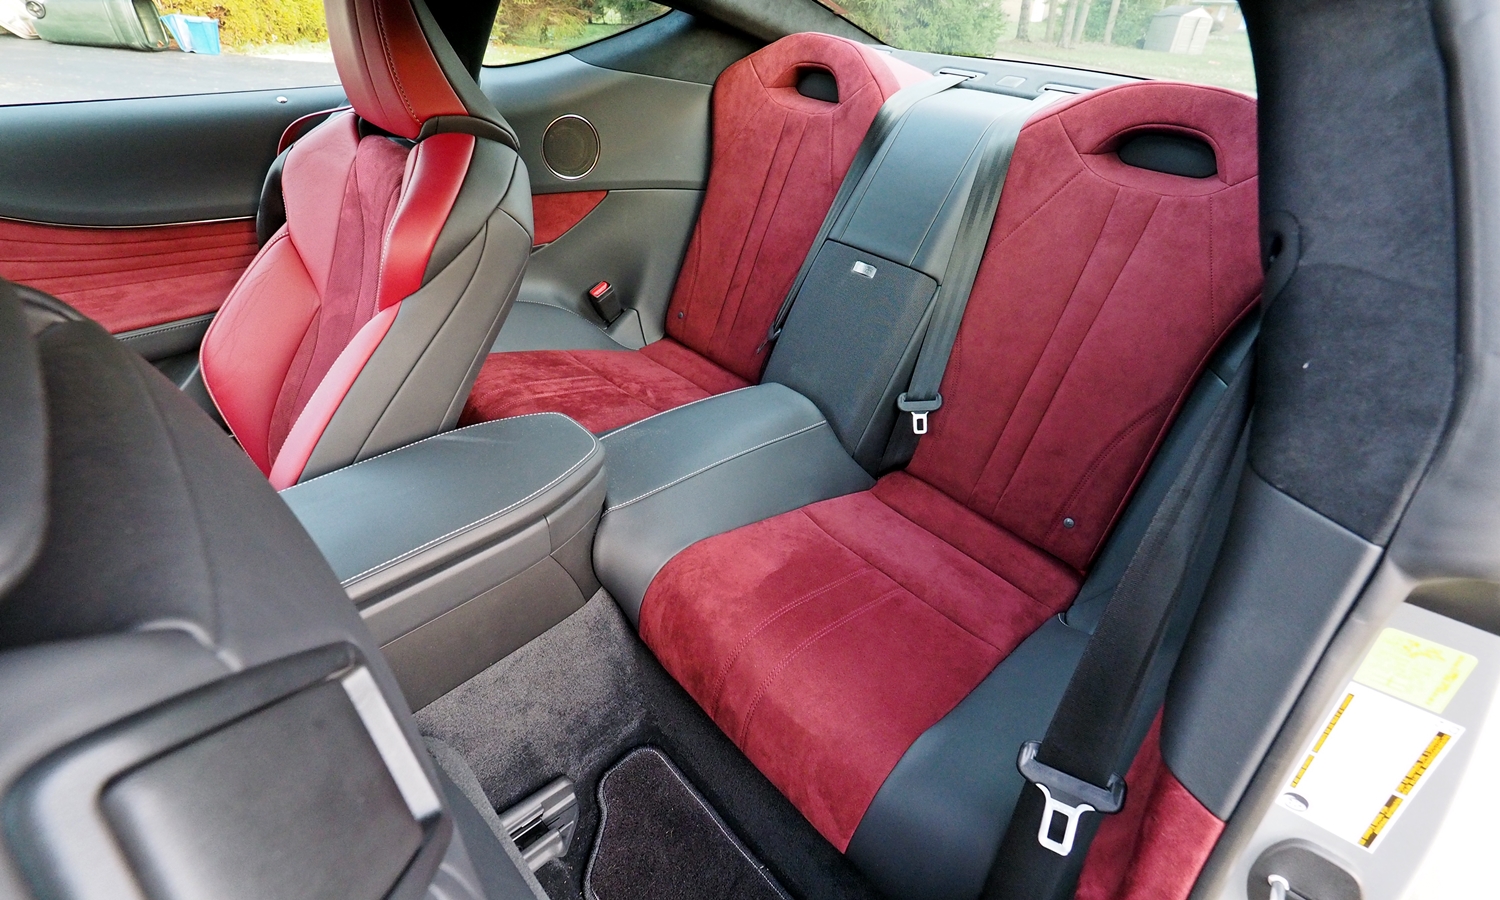 LC Reviews: Lexus LC 500 rear seat